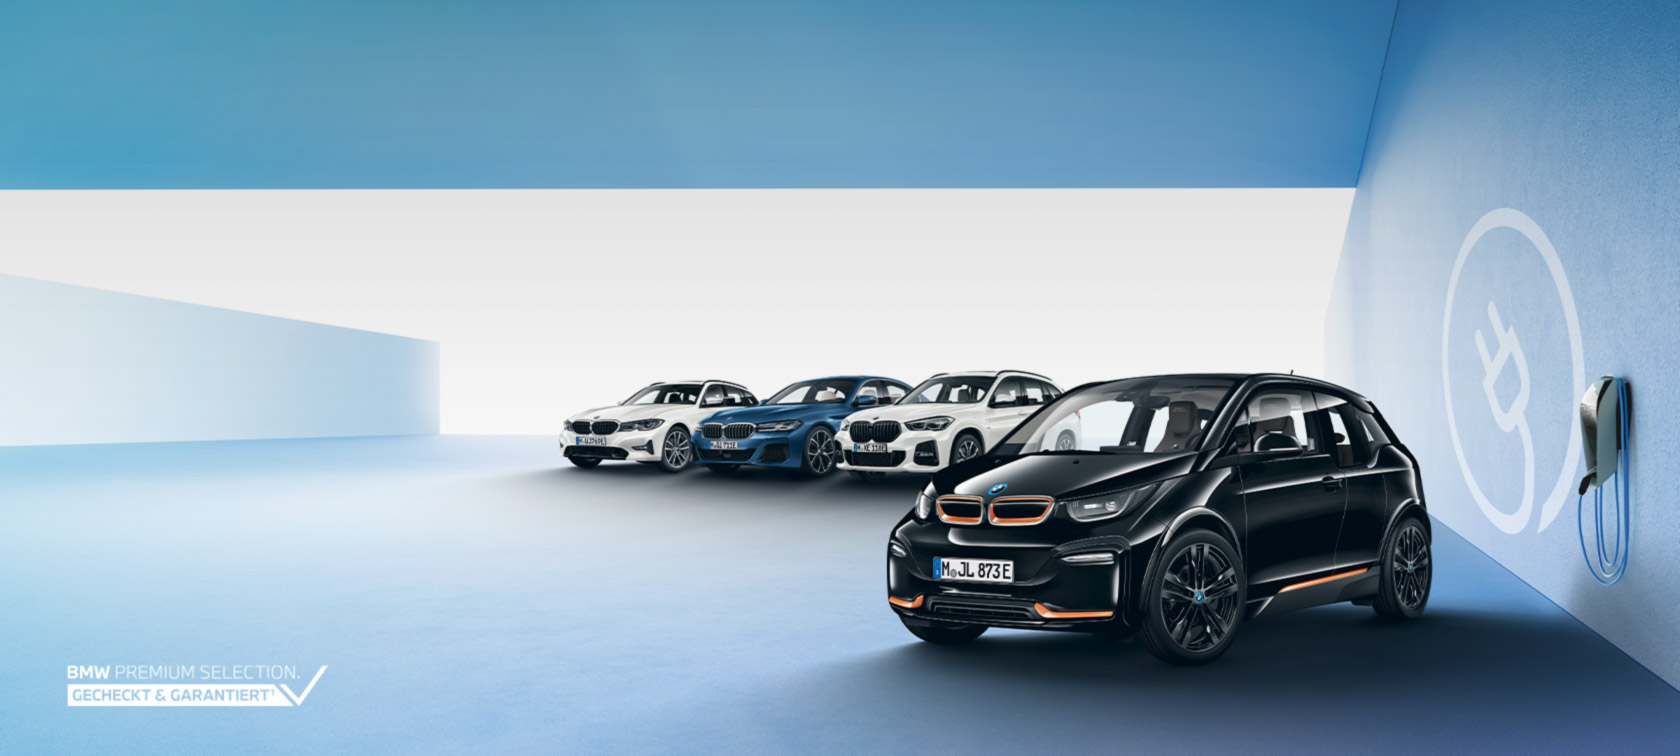 WAHL-GROUP: BMW Fahrzeuge, Services, Angebote u.v.m.